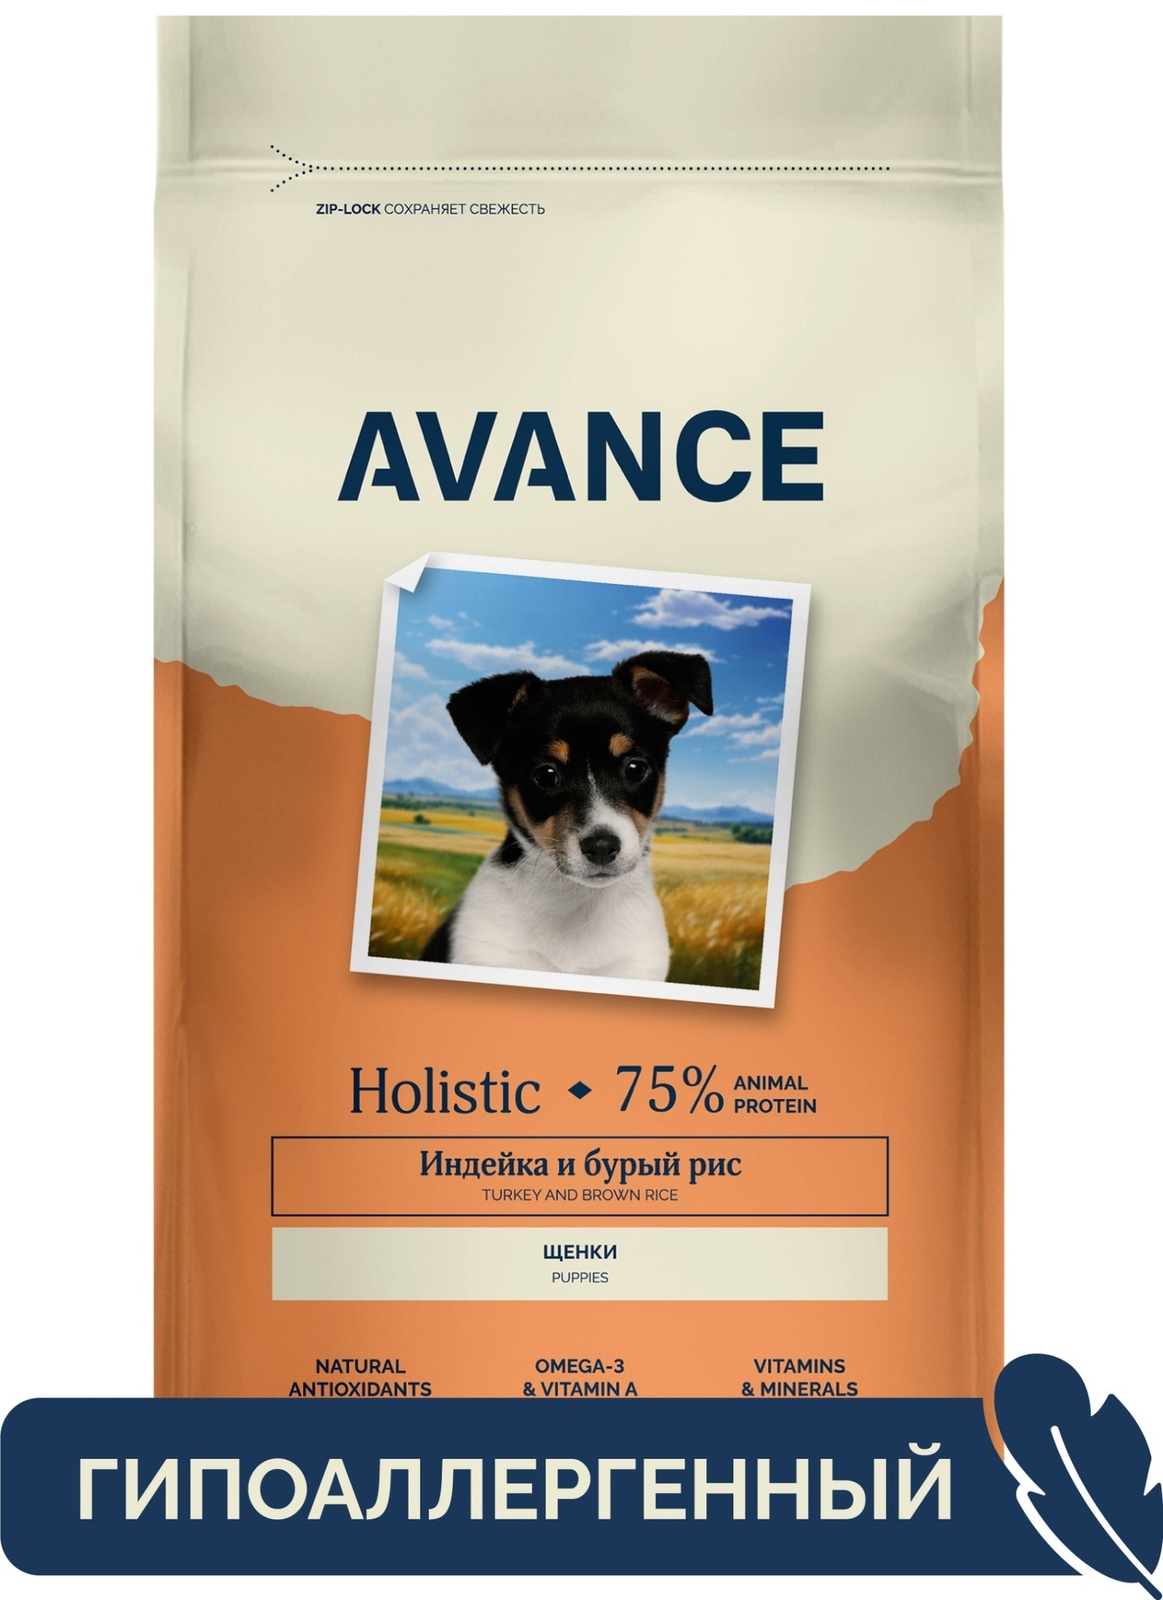 AVANCE holistic полнорационный сухой корм для щенков с индейкой и бурым рисом (10 кг)